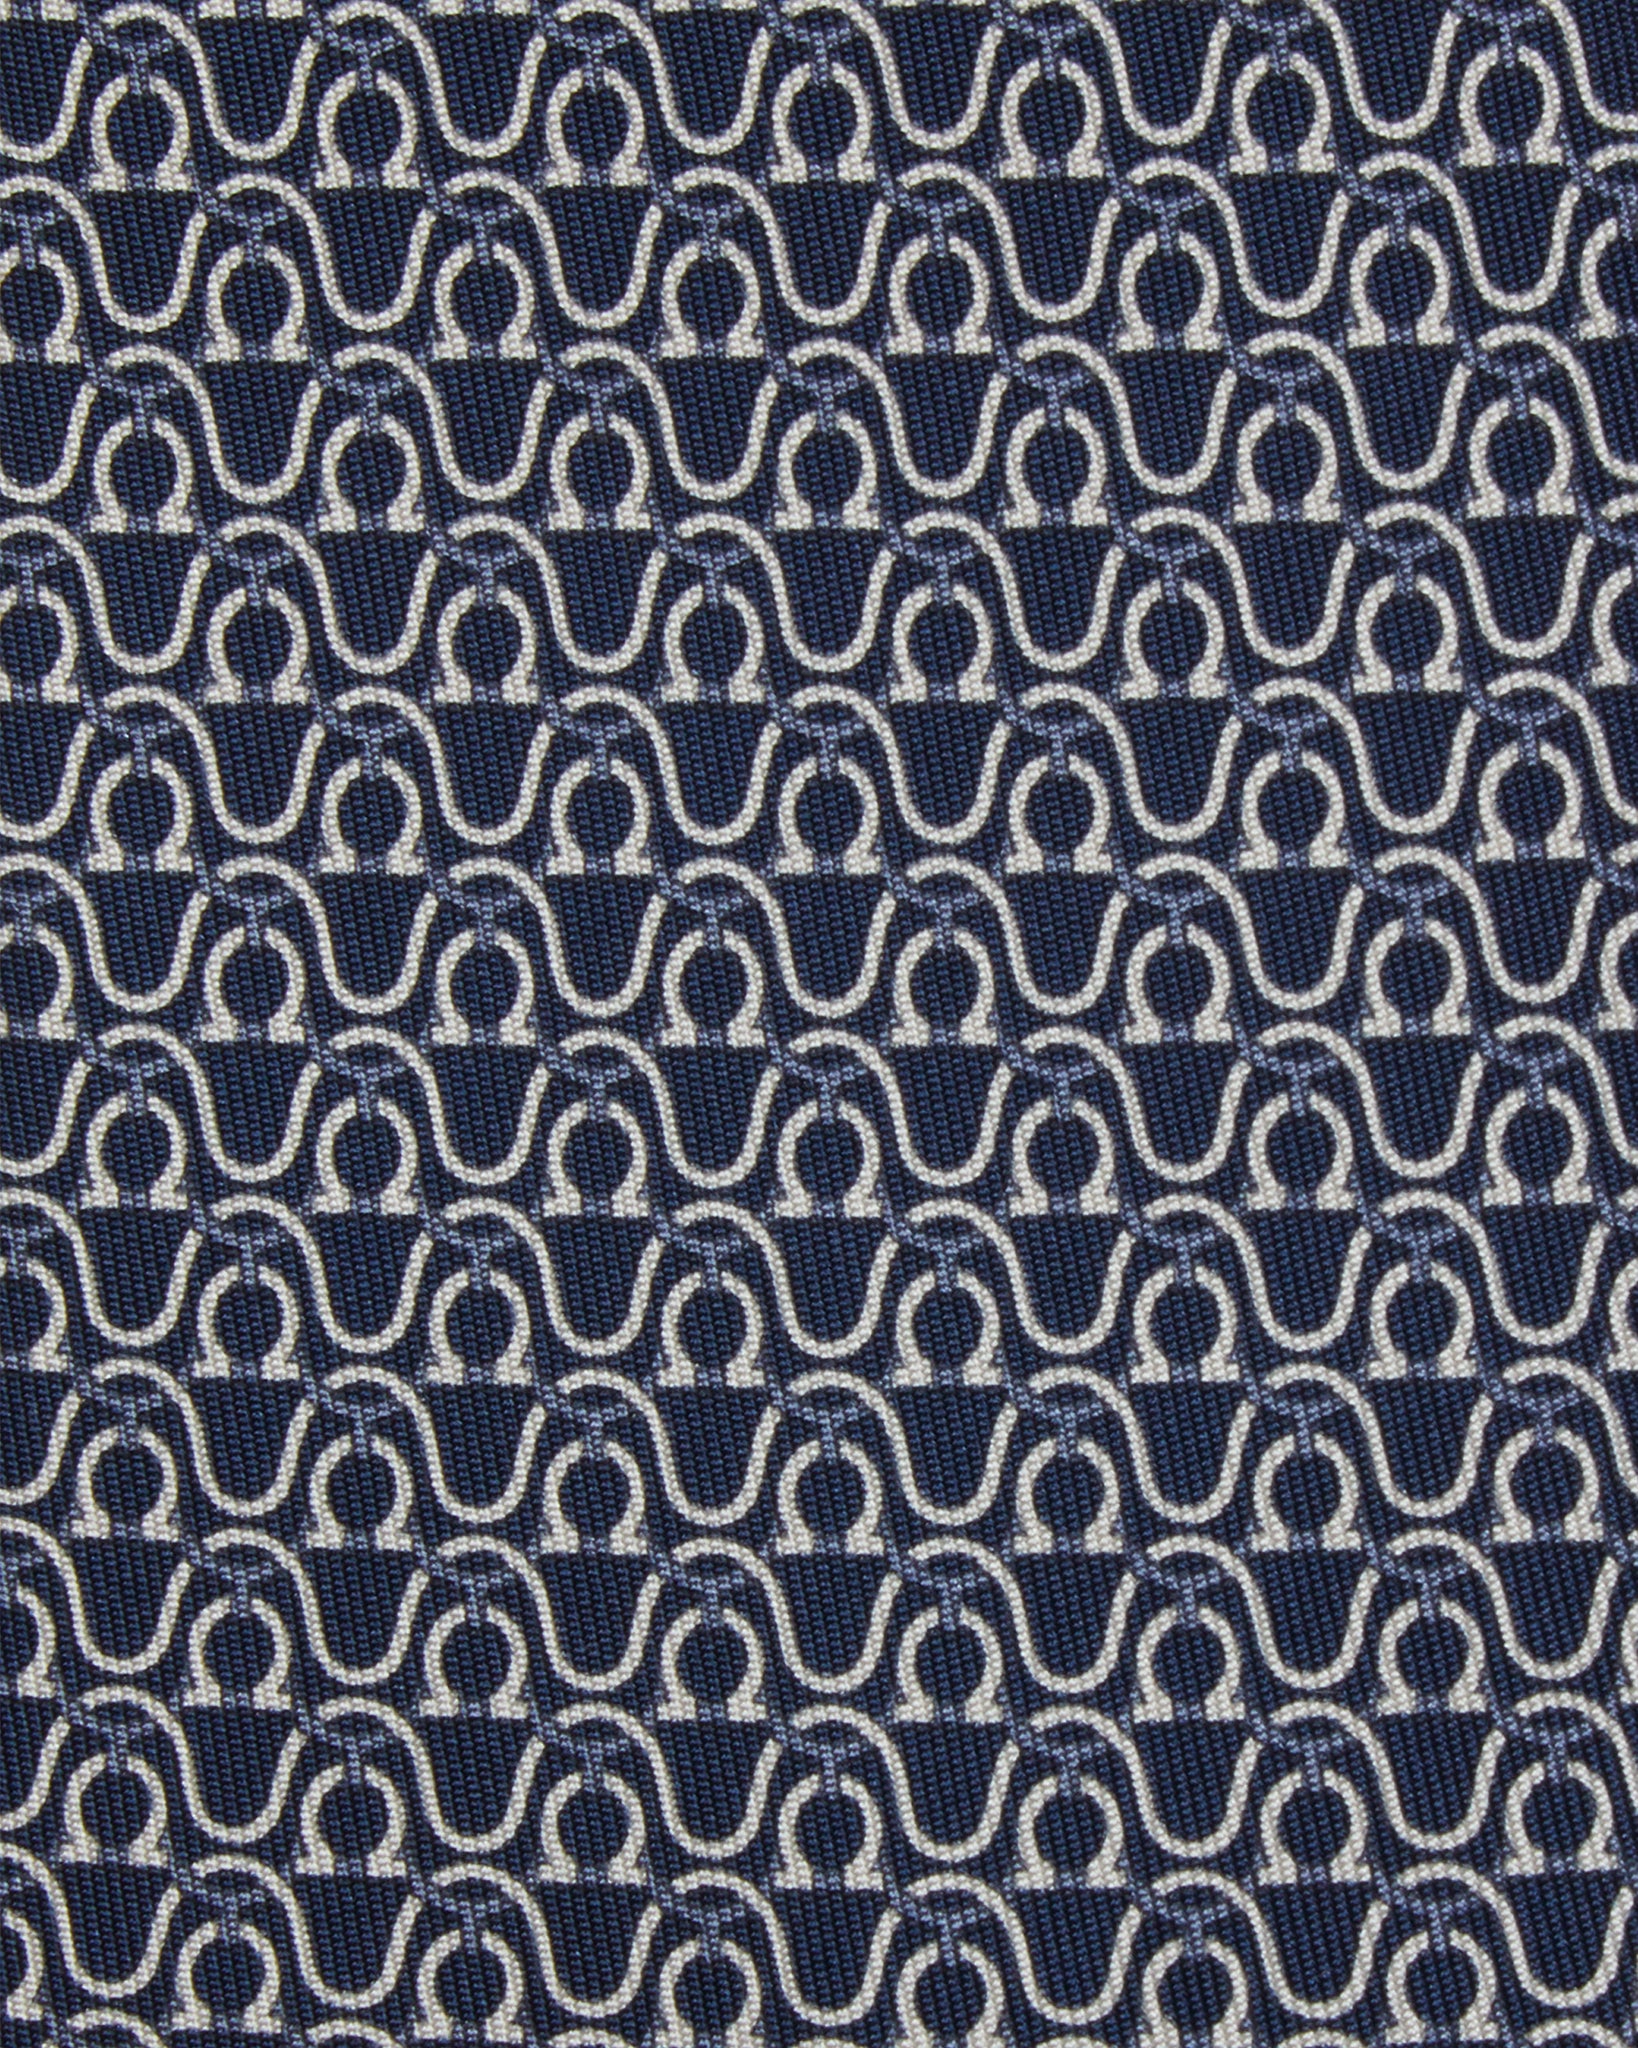 Silk Print Tie in Navy/Grey/White Stirrups